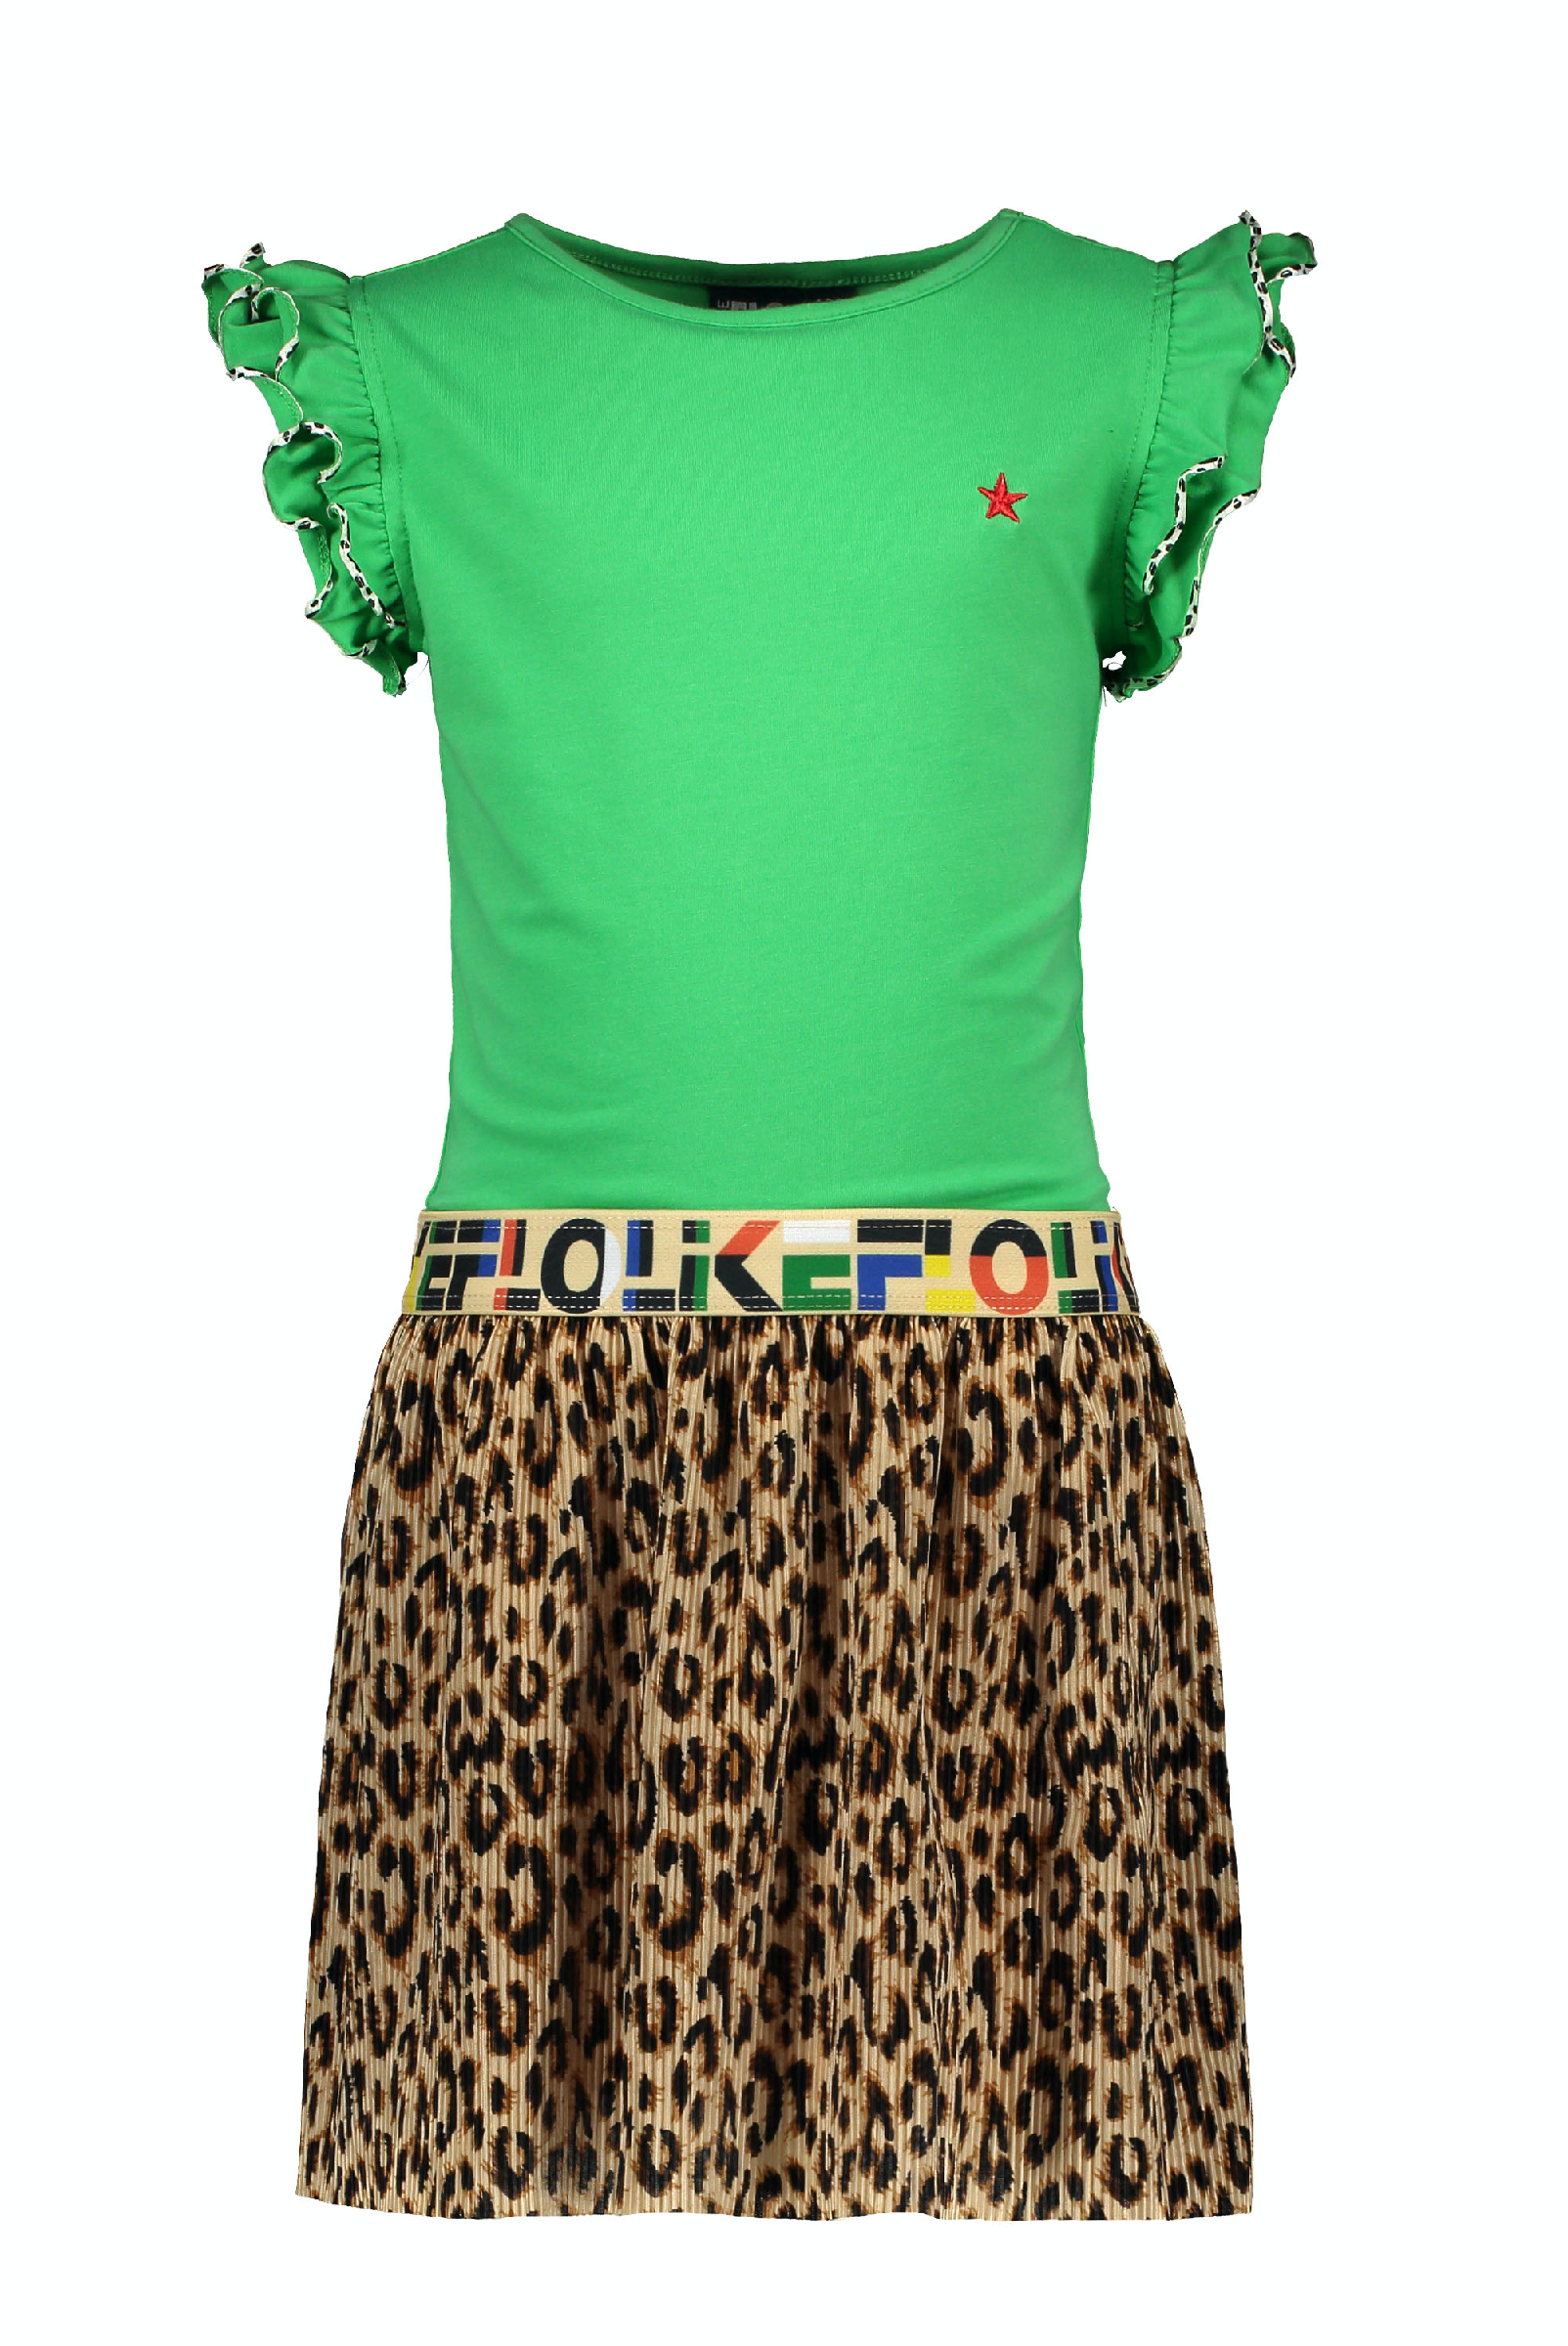 Flo girls green with AO plisse skirt